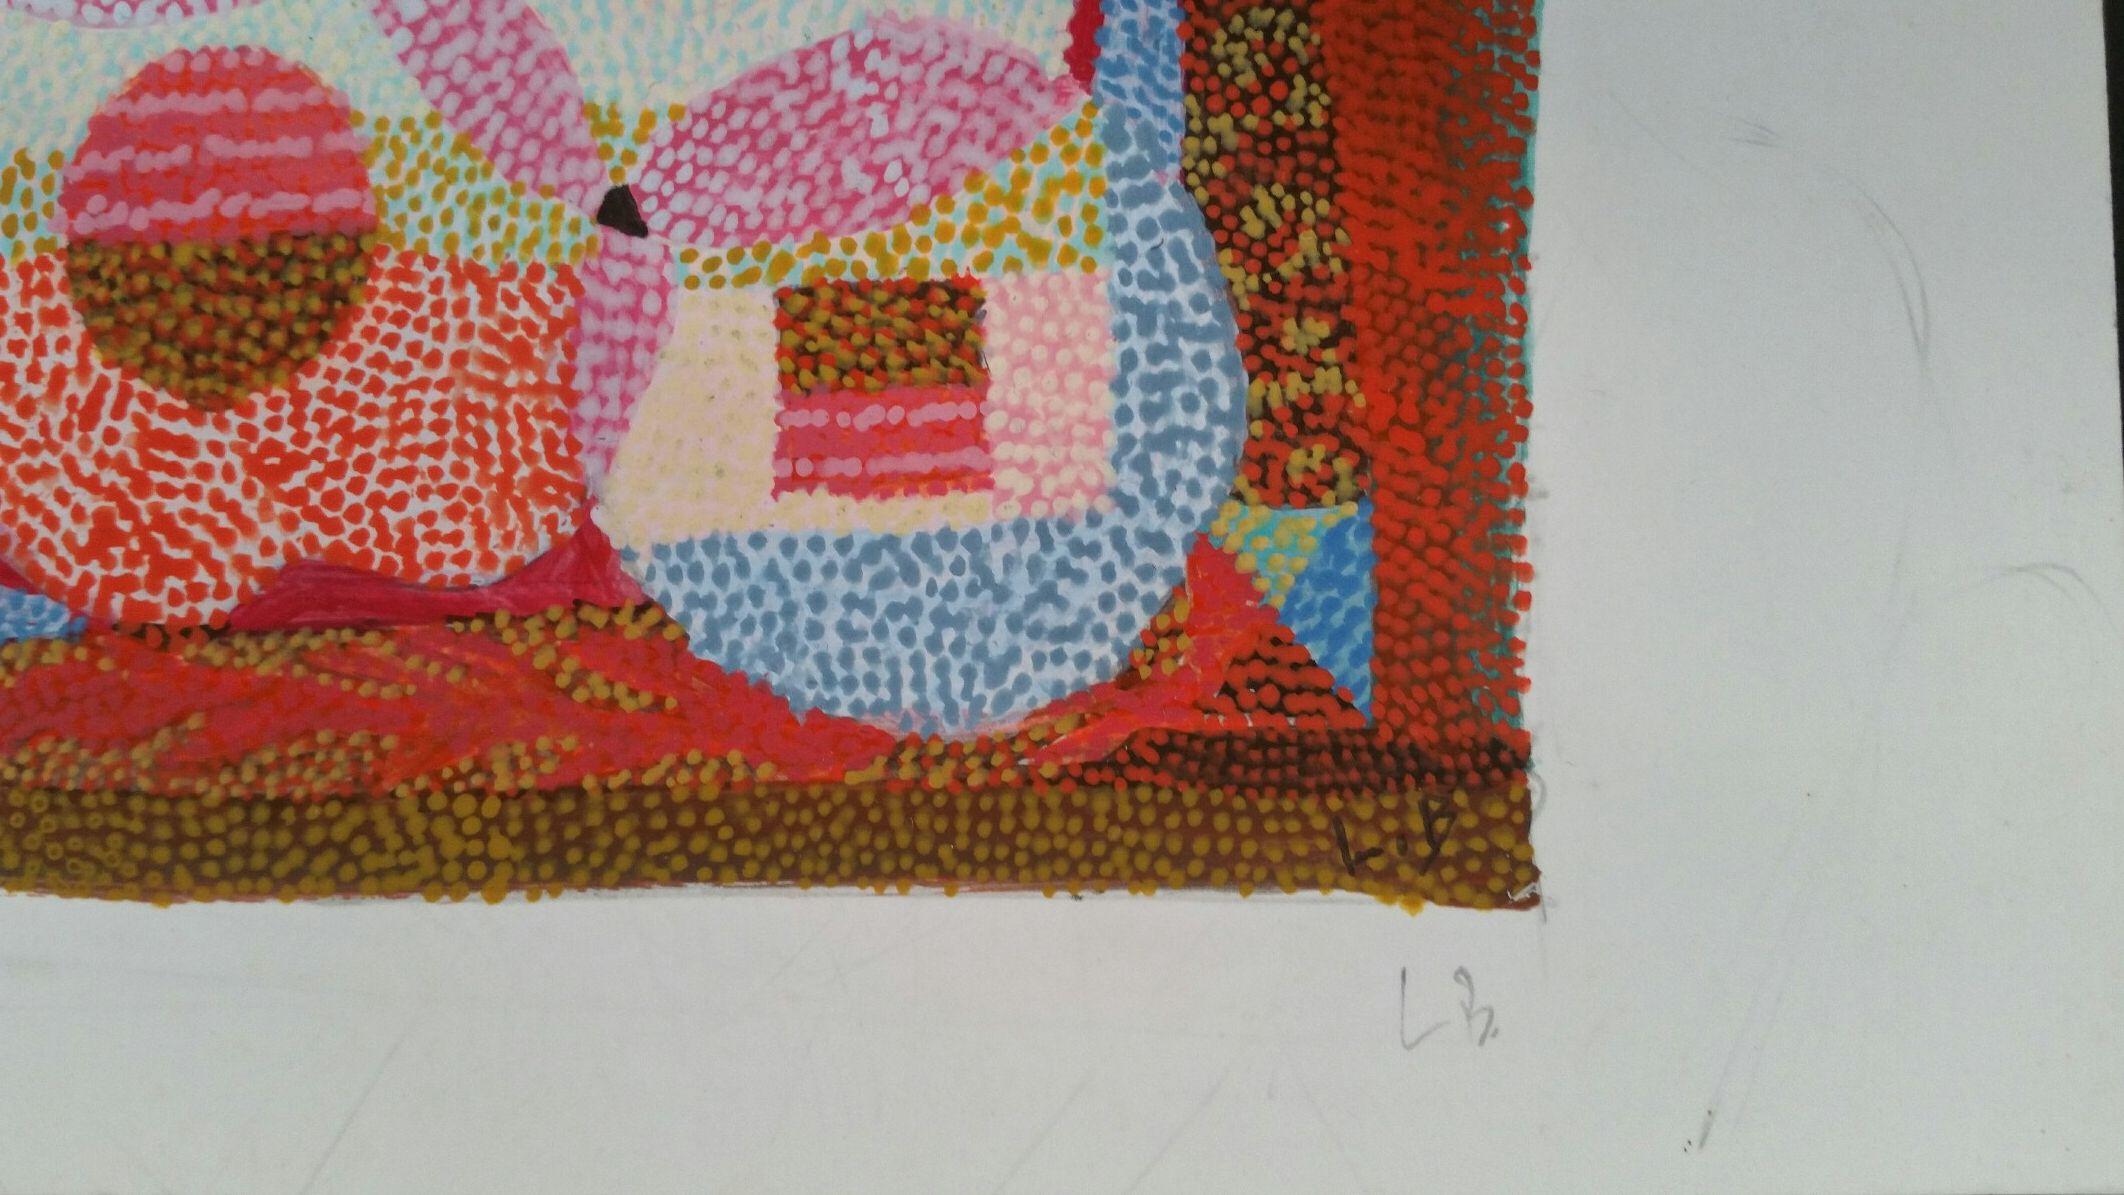 Pointillistisches abstraktes Design
von Louis Bellon (Französisch 1908-1998)
paraphiert unten rechts im Bild und nochmals am Rand
gouache-Malerei auf Papier, ungerahmt
unvollendete Skizze auf der Rückseite
abmessungen: 4.4 x 5,6 Zoll (insgesamt